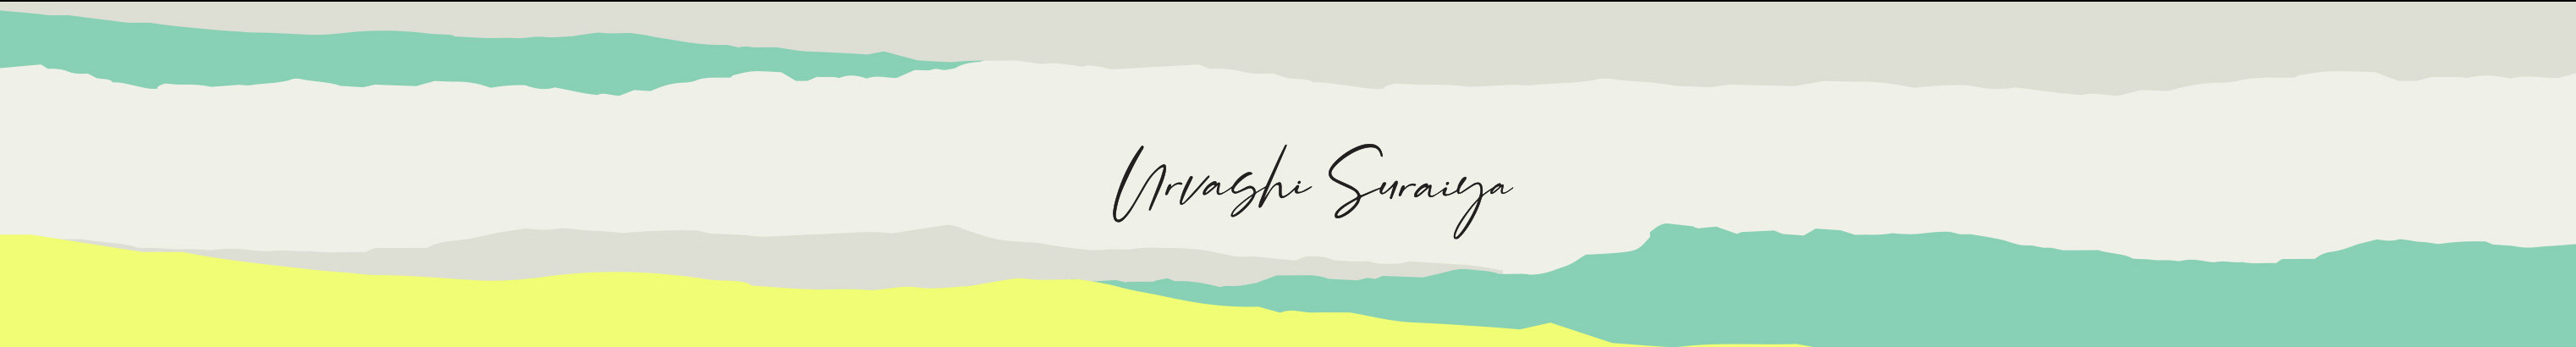 Urvashi Suraiya's profile banner